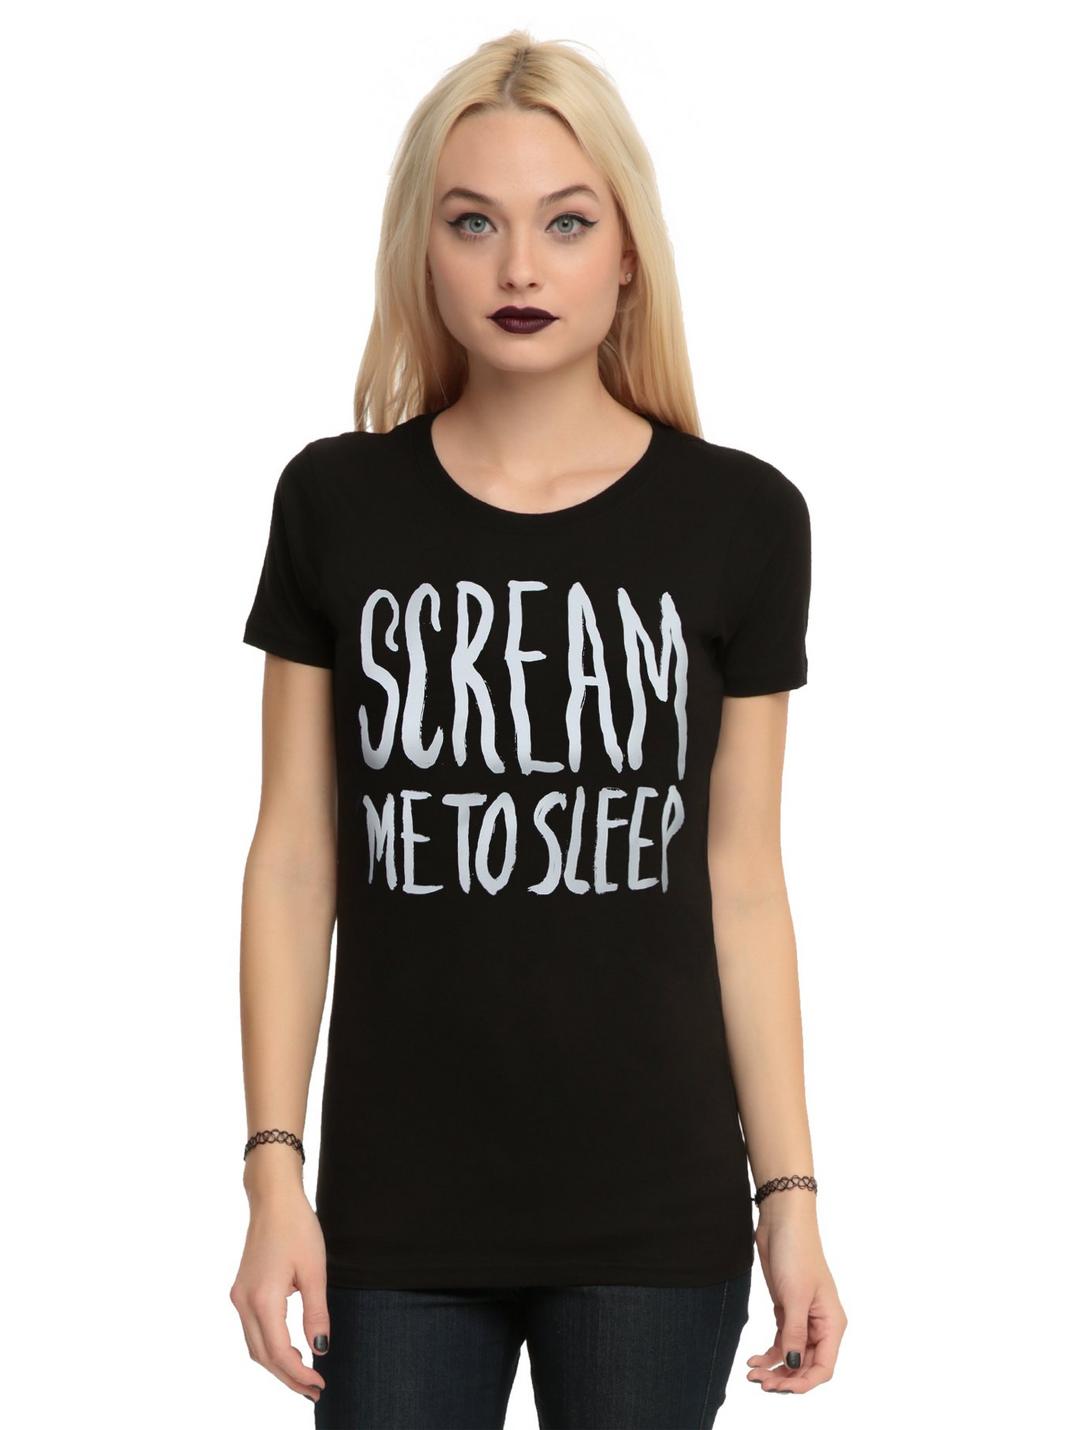 Scream Me To Sleep Girls T-Shirt | Hot Topic